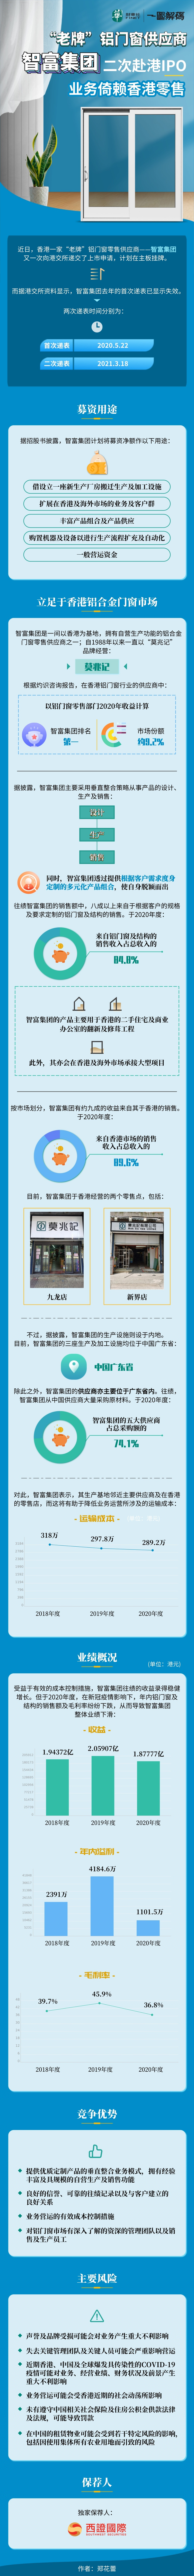 一图解码：“老牌”铝门窗供应商智富集团二次赴港IPO 业务倚赖香港零售